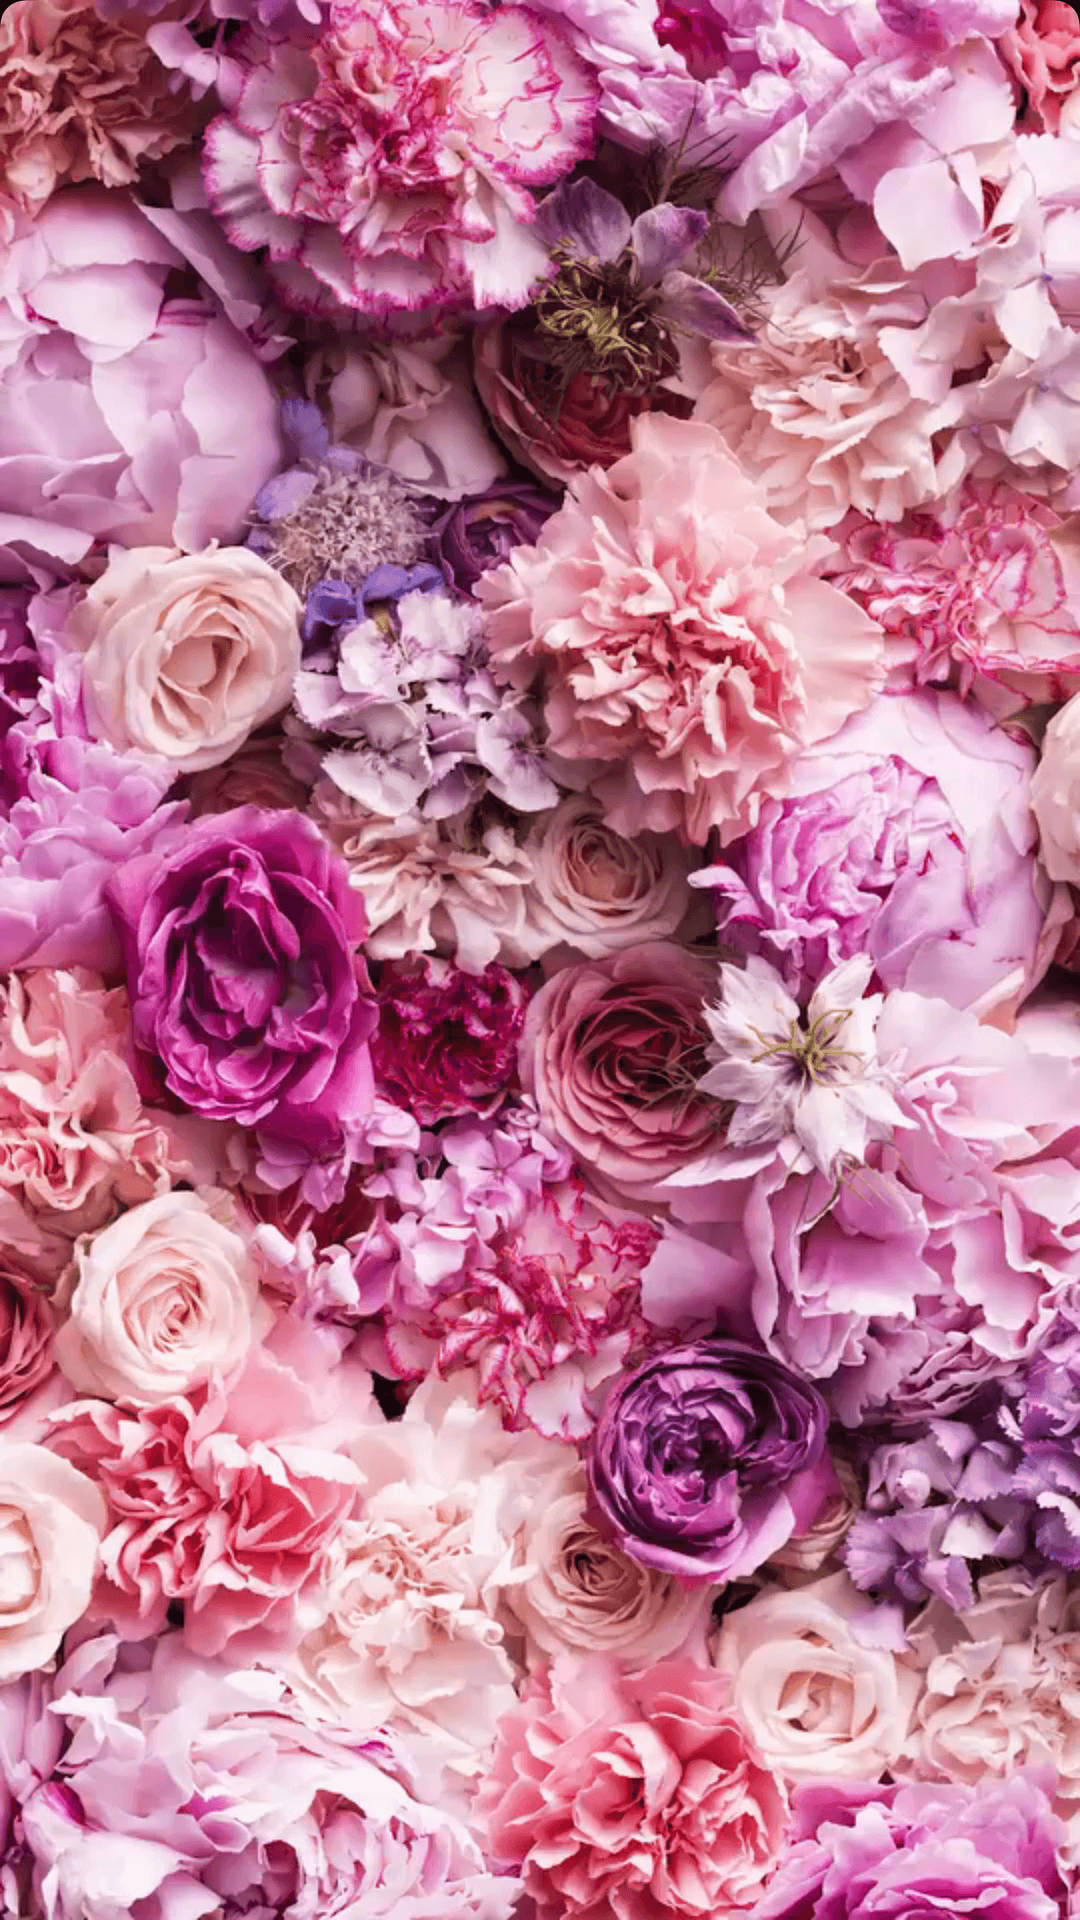 Hoa hồng tím và hồng là sự kết hợp đầy tinh tế giữa một màu sắc trầm màu và một màu sáng rực rỡ. Ảnh này chắc chắn sẽ khiến bạn cảm thấy mê hoặc và tò mò muốn khám phá thêm nhiều loài hoa hồng đầy sắc màu khác.